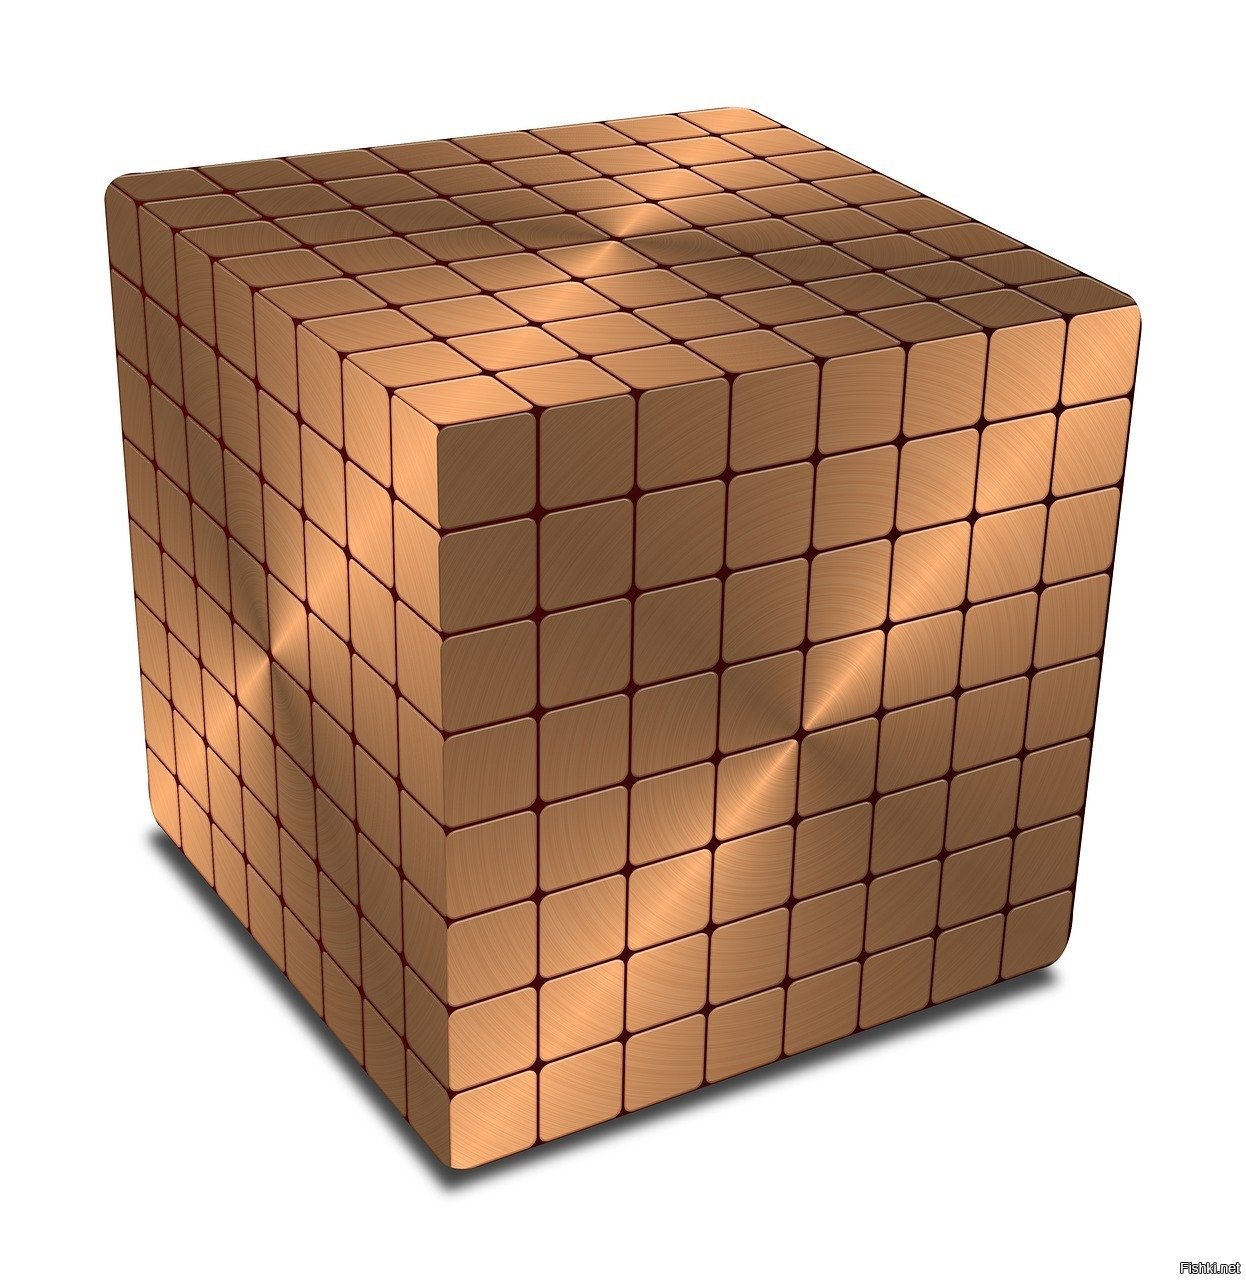 Reg kz. Куб. Куб фигура. 3д куб. Куб на прозрачном фоне.